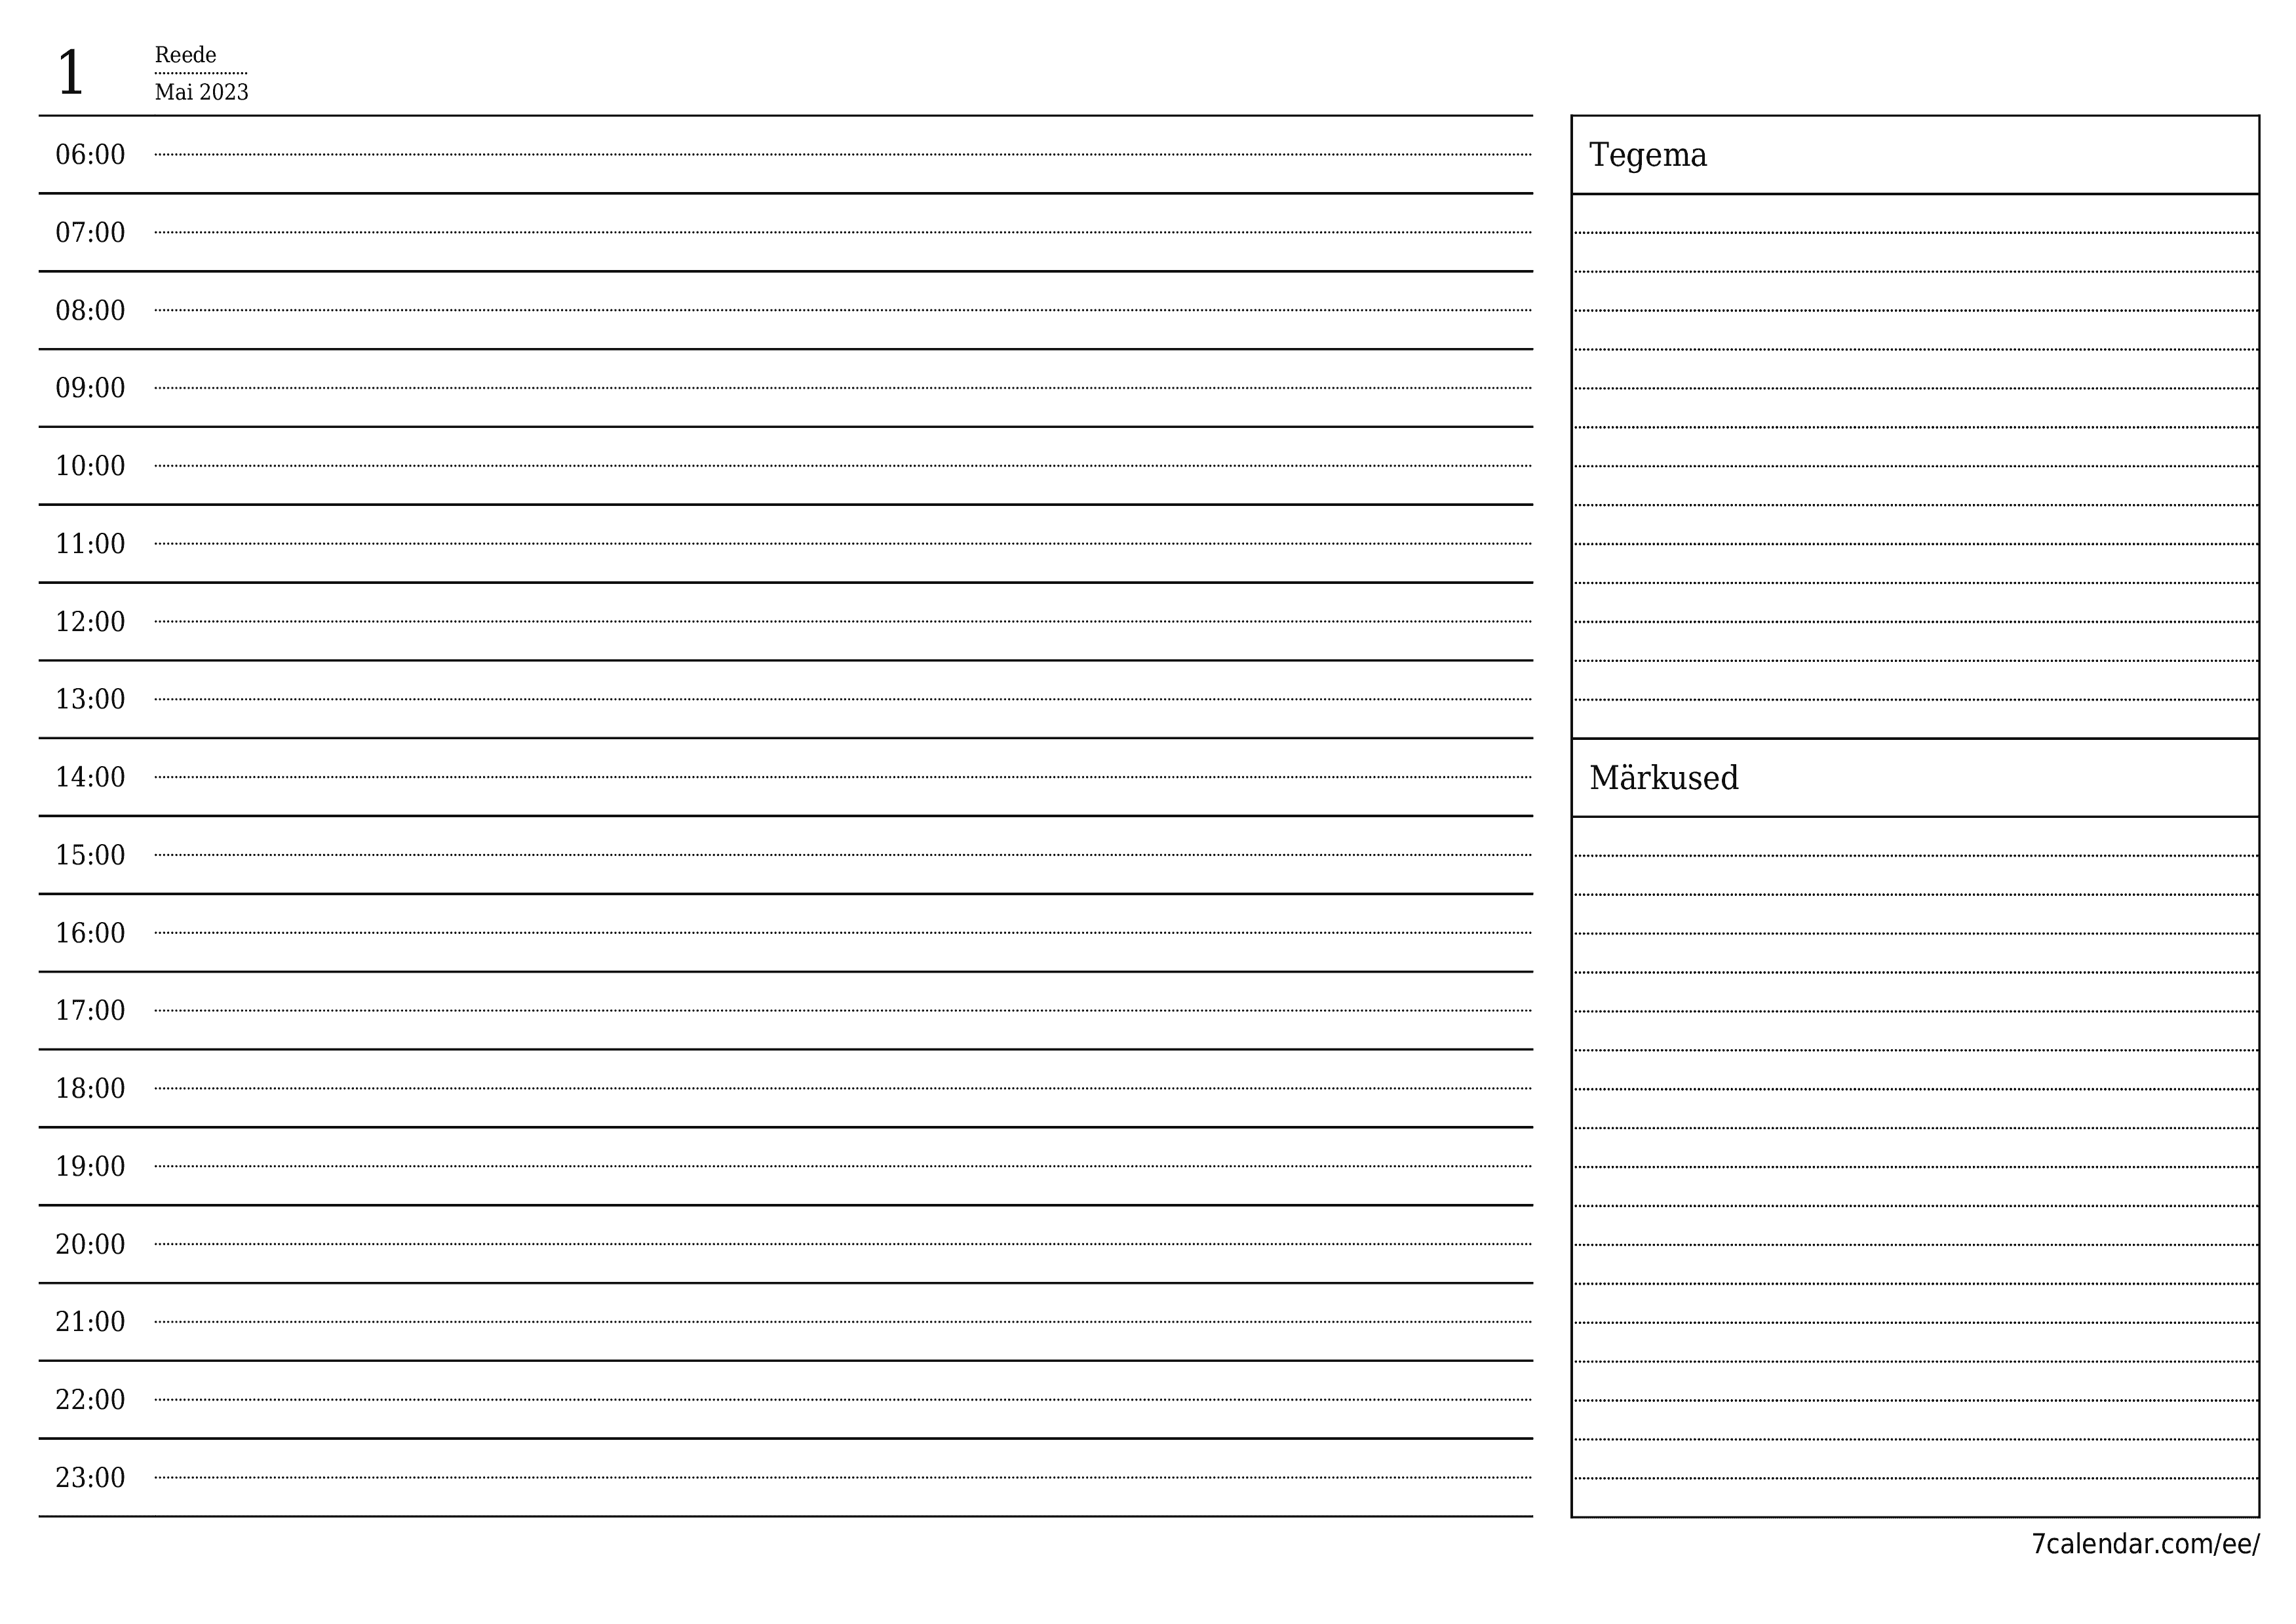 Tühjendage päevakava Mai 2023 märkmetega, salvestage ja printige PDF-i PNG Estonian